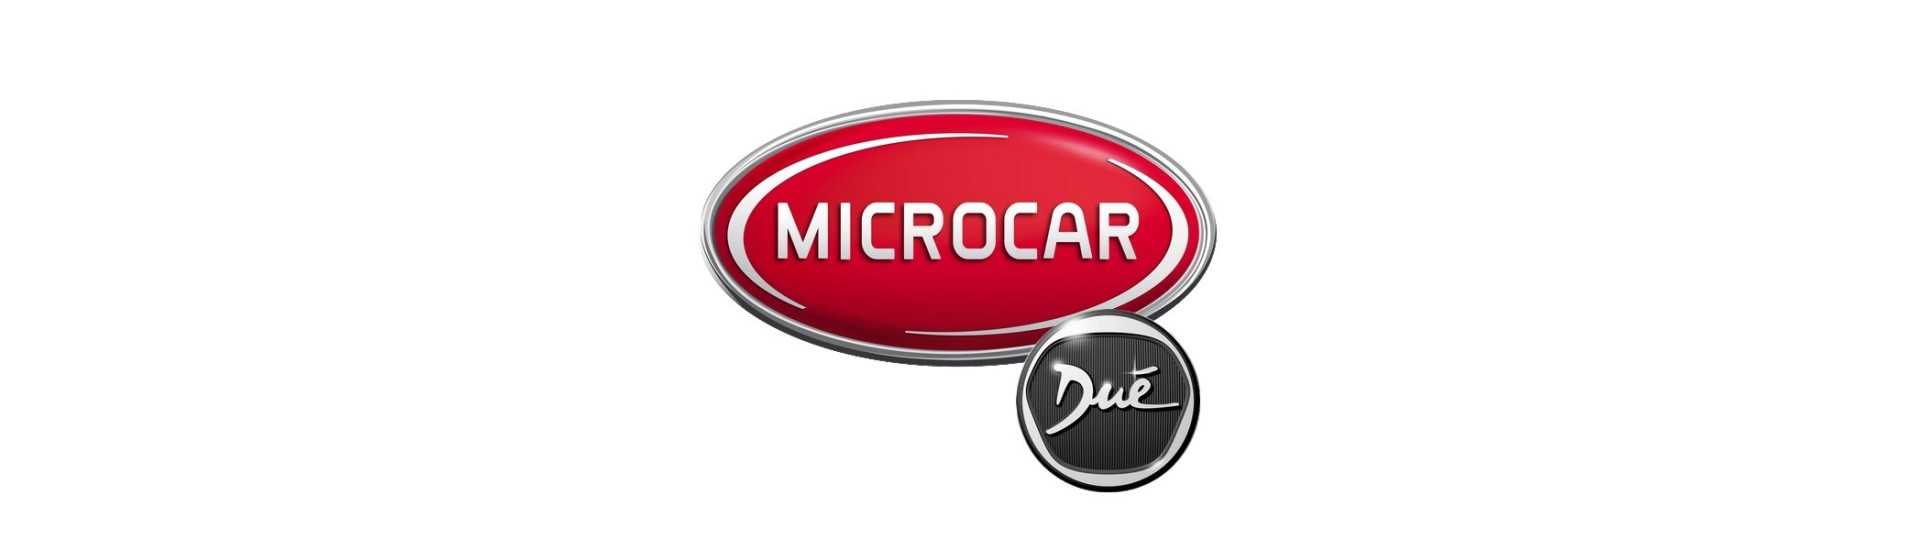 Solsken till bästa pris för bil utan körkort Microcar Dué